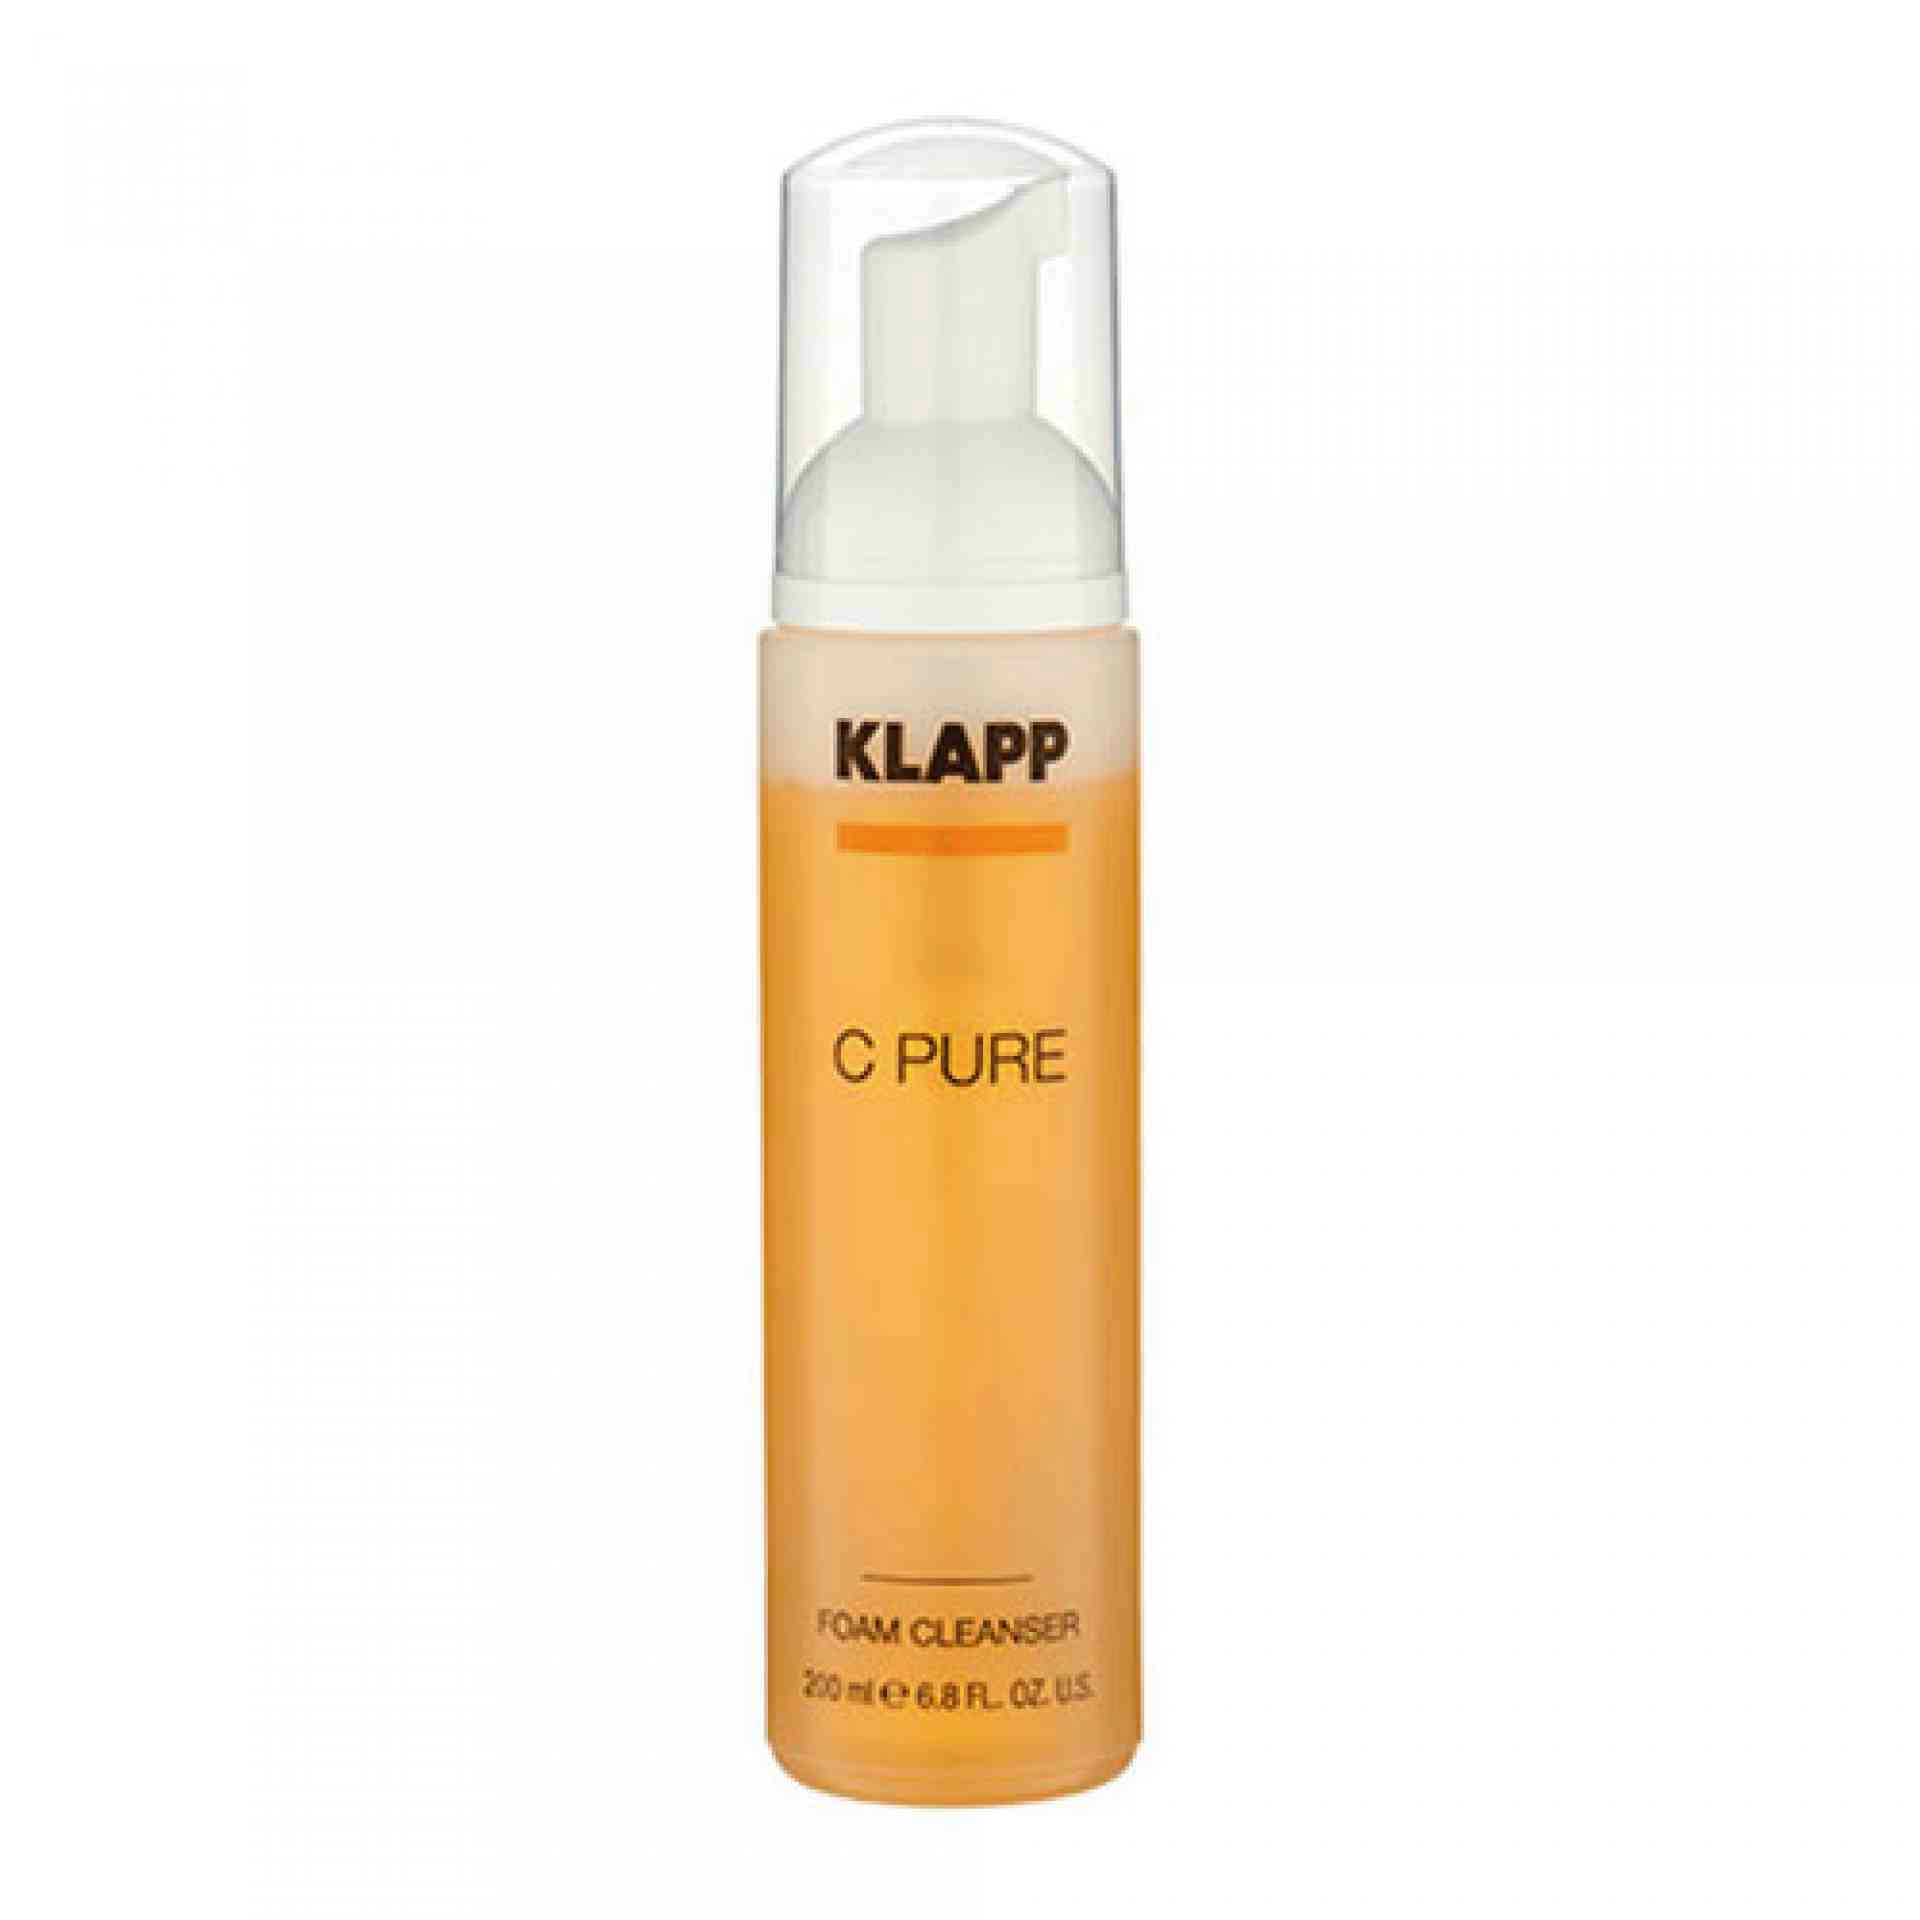 Foam Cleanser | Espuma limpiadora 200ml - C Pure - Klapp ®